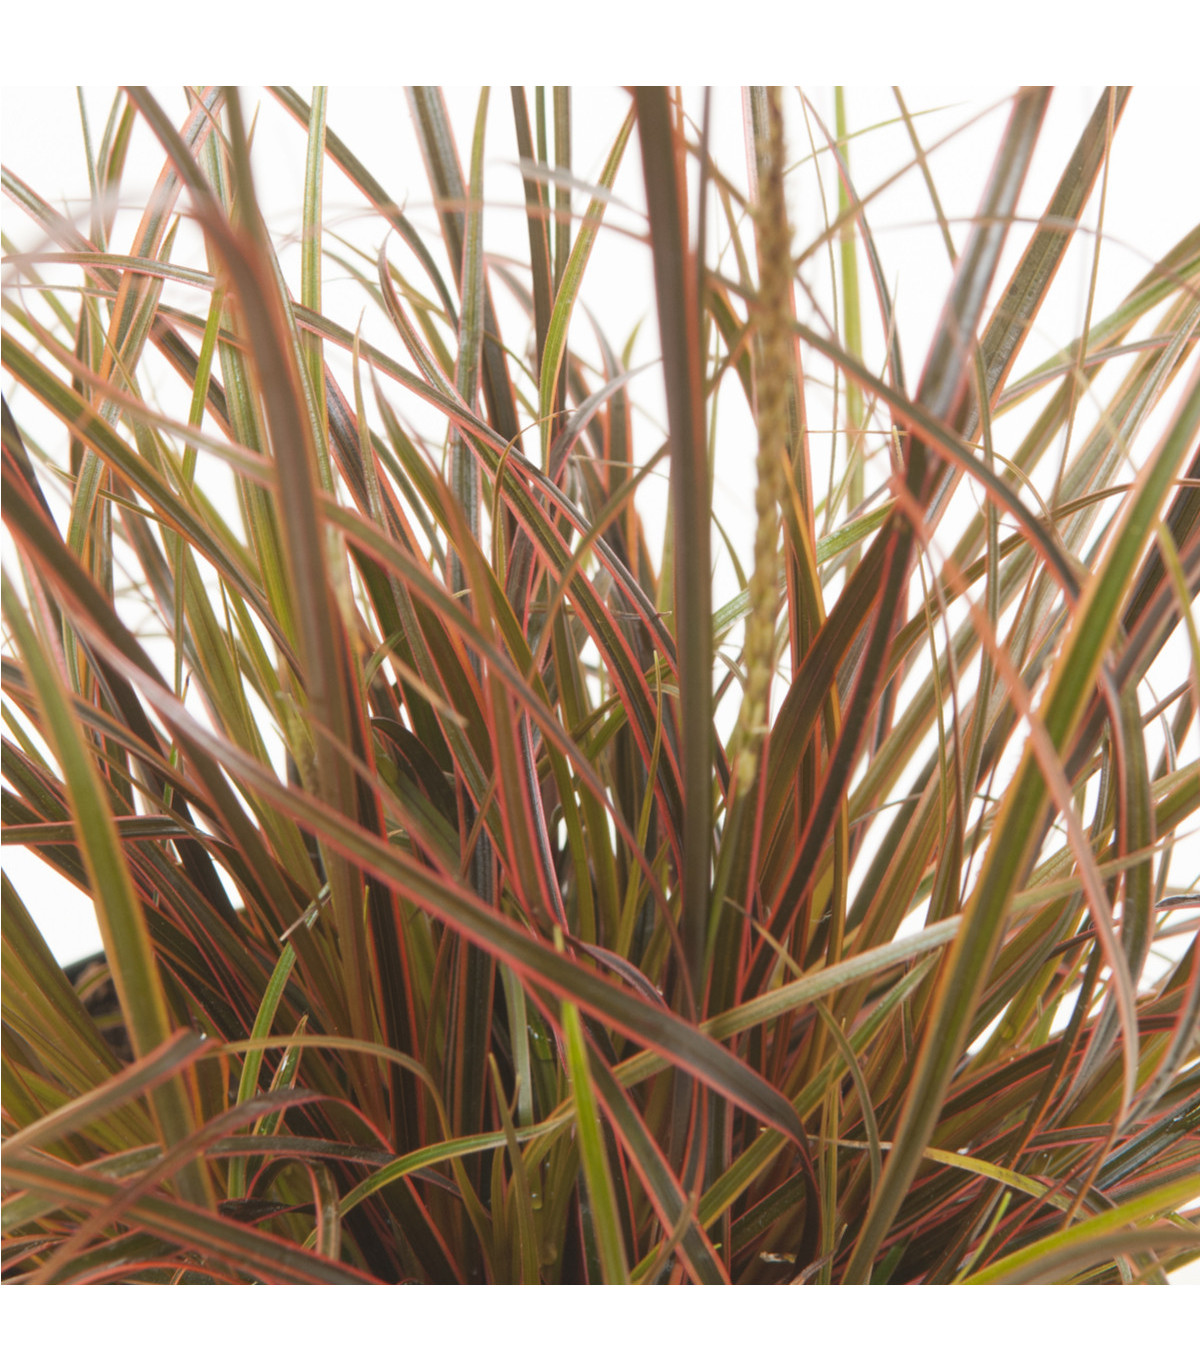 Okrasná tráva - Uncinia egmontiana - semena trávy - 5 ks